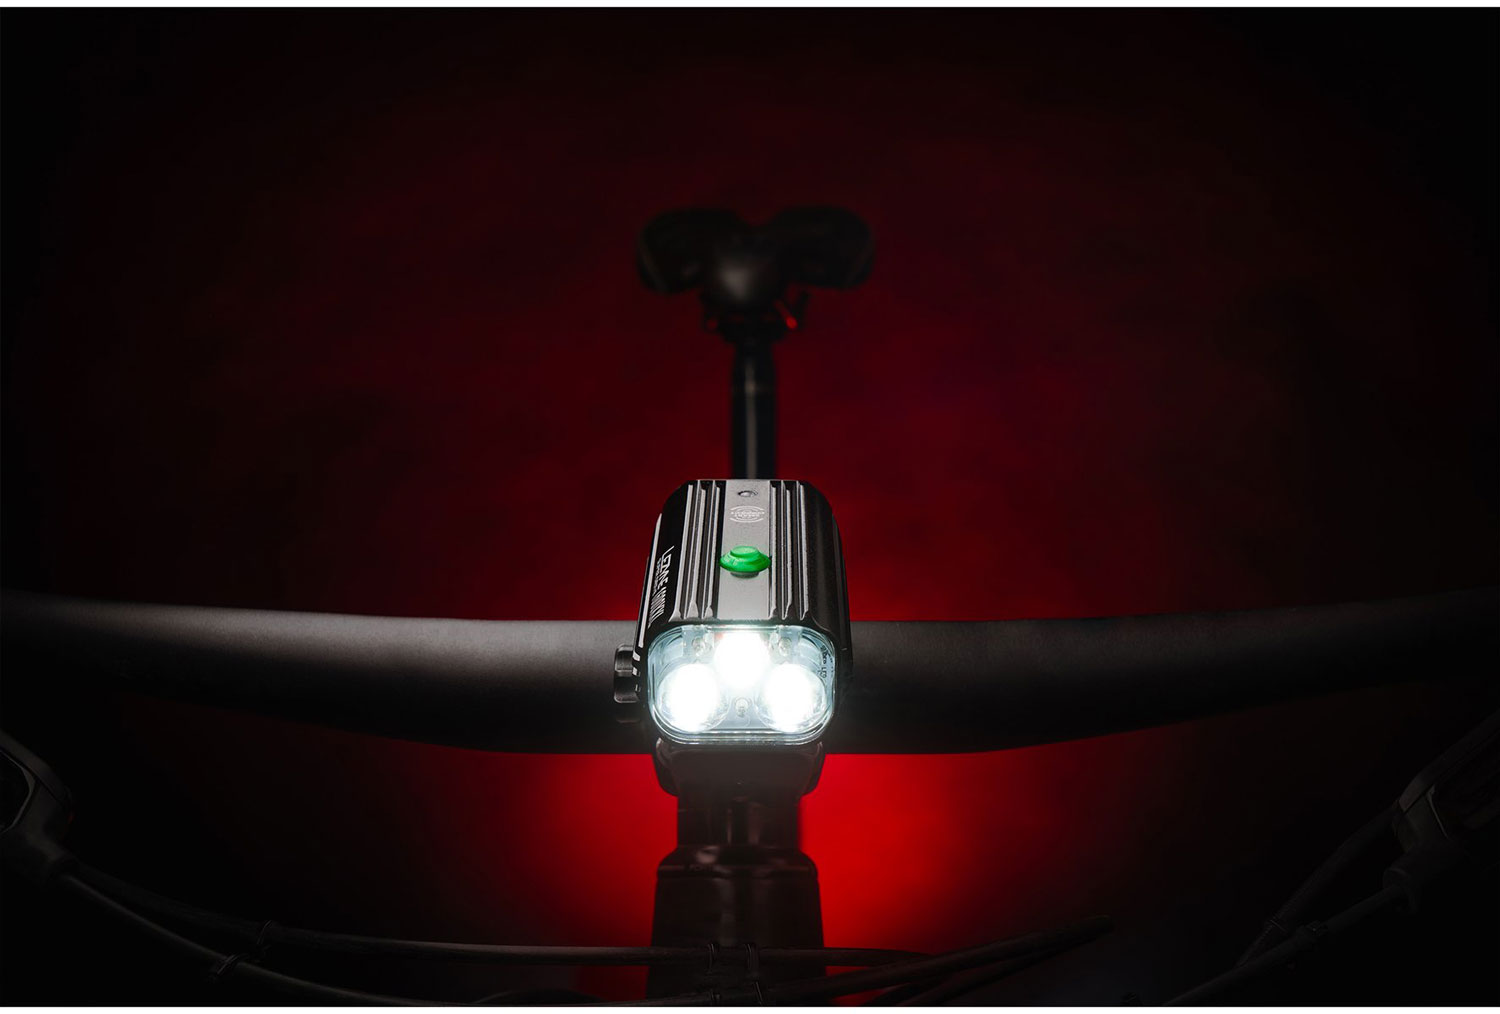 Bike light